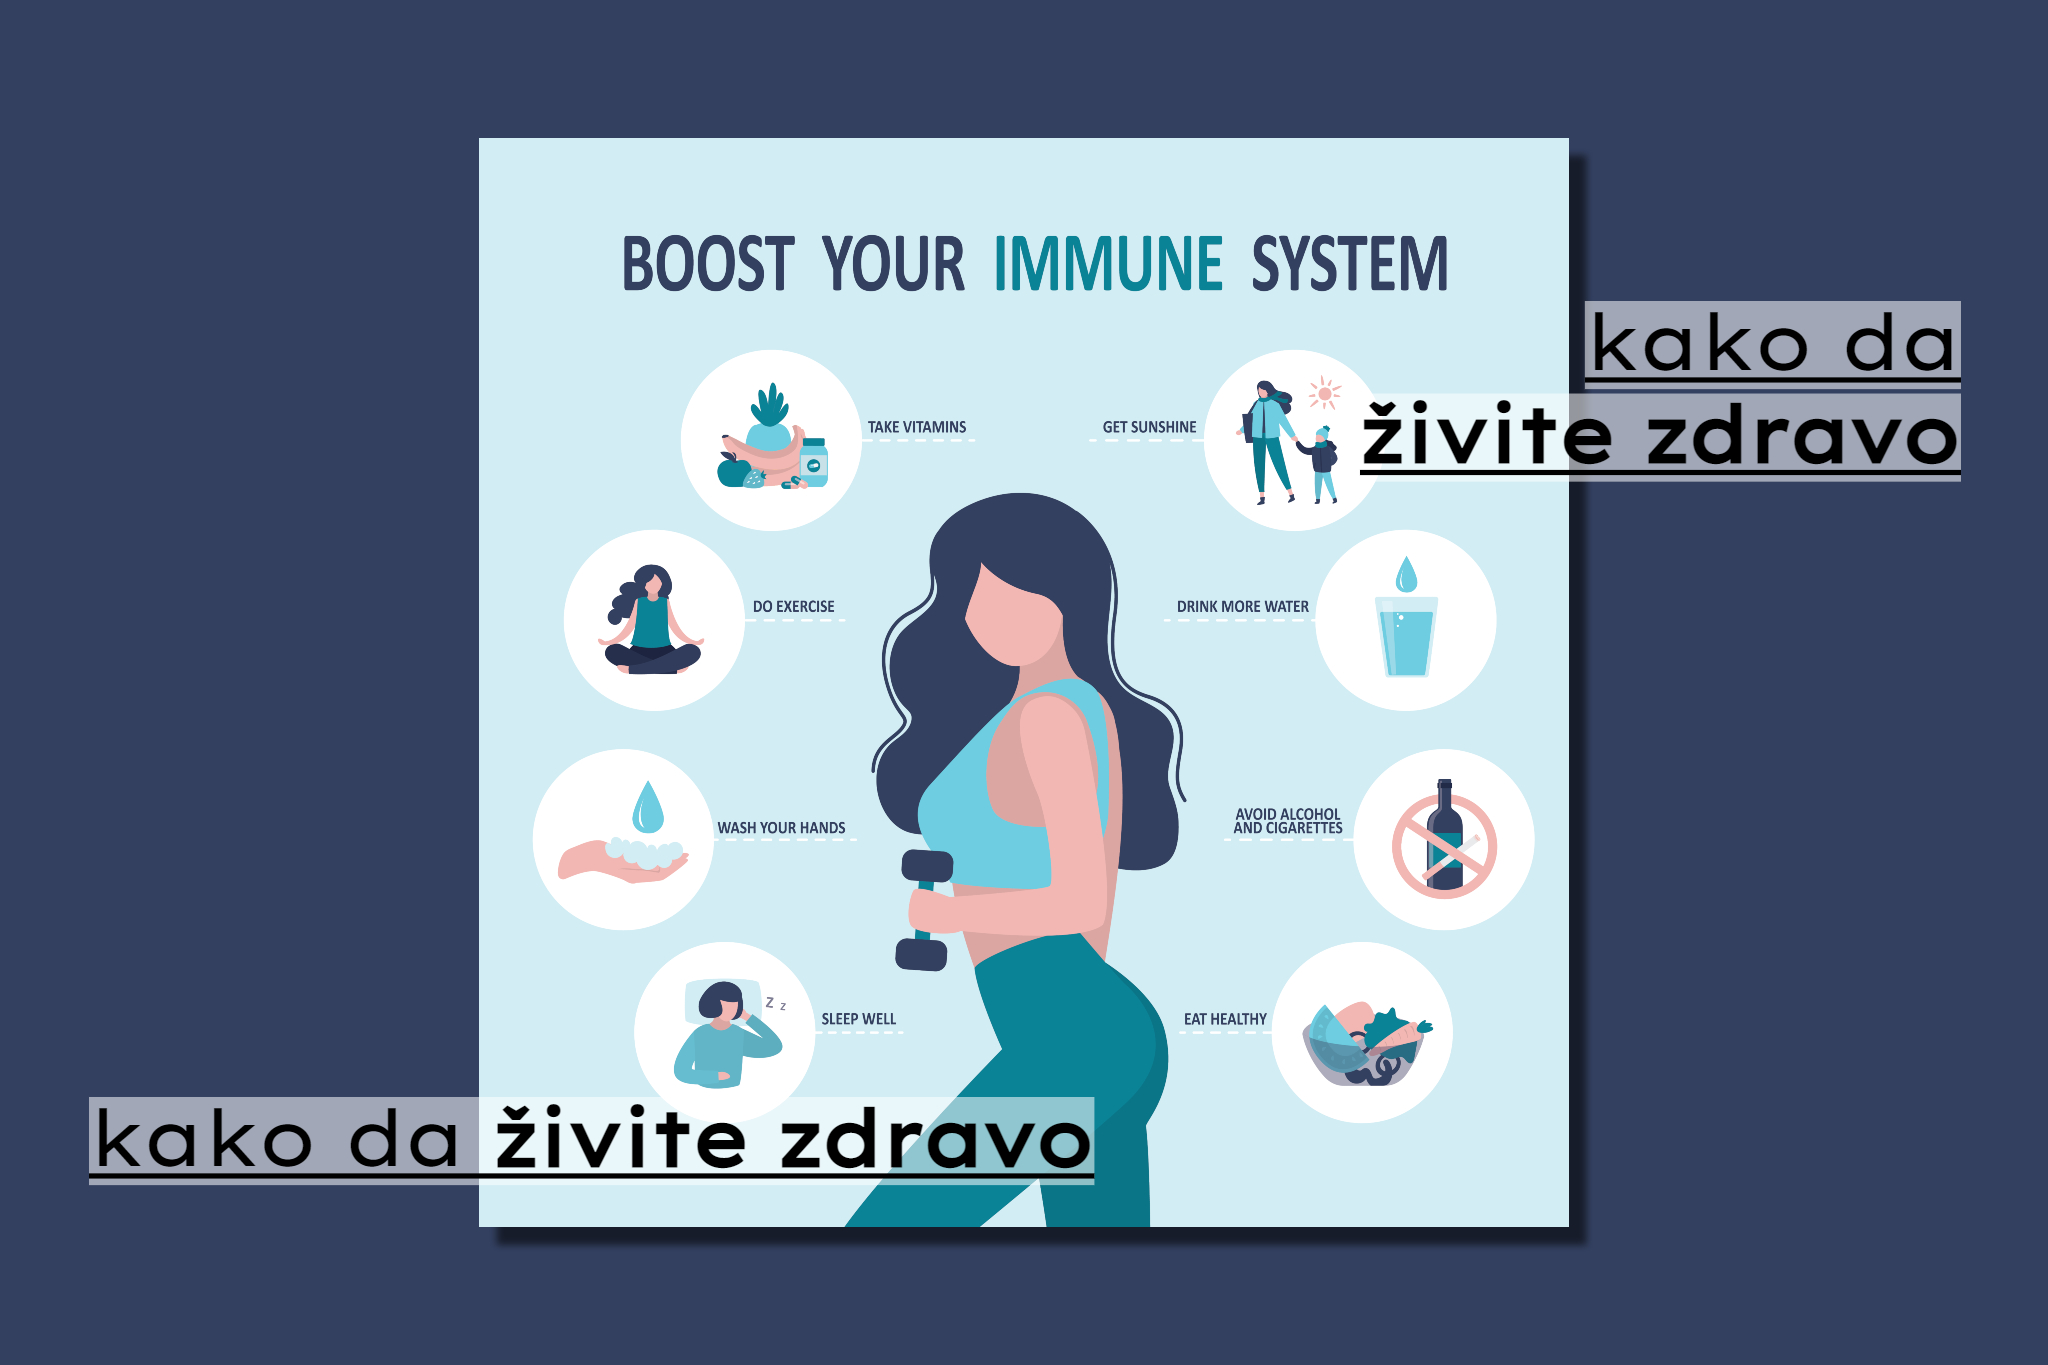 Boostovanje imuniteta u samo četiri koraka